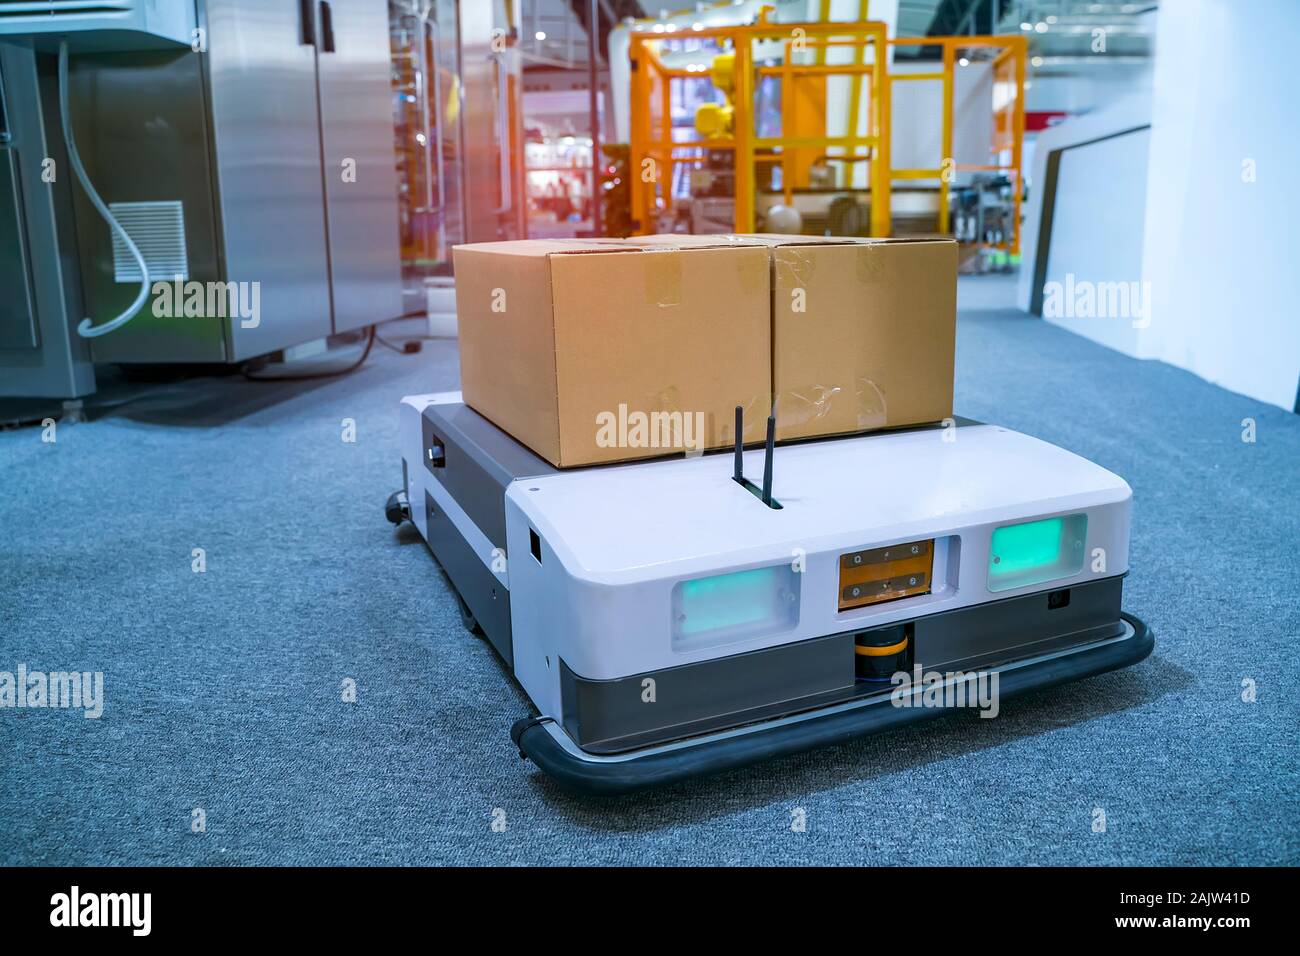 Almacén coche robot lleva caja de cartón ensamblado en la fábrica. Foto de stock